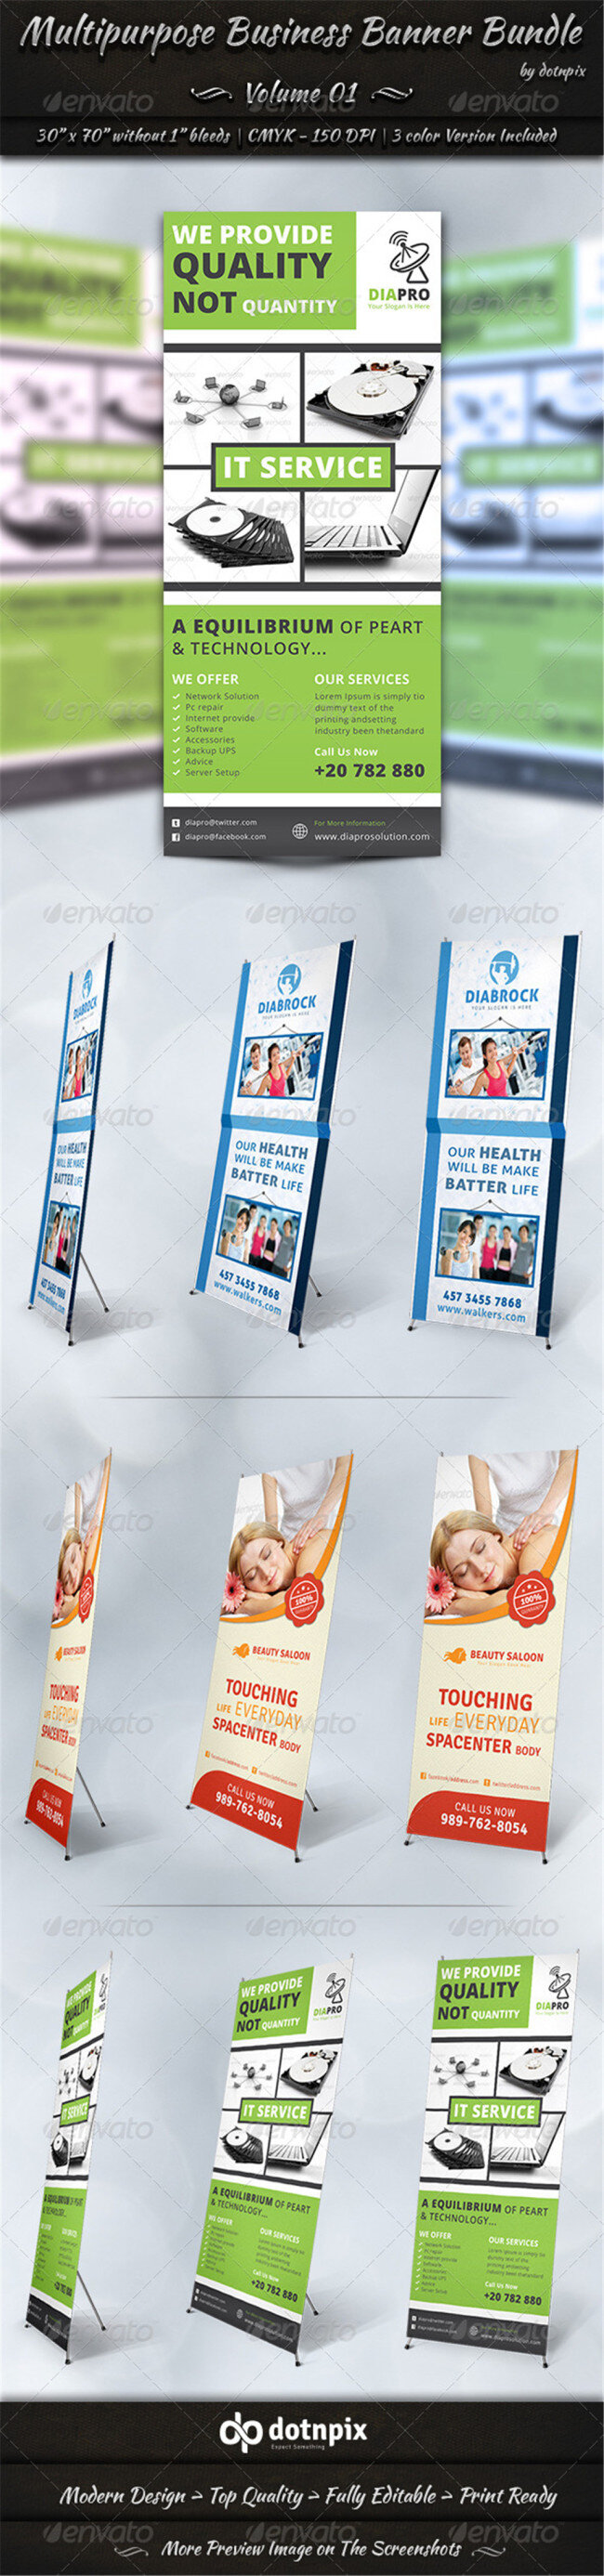 国外 企业 宣传册 宣传海报 展板设计 商业宣传 白色